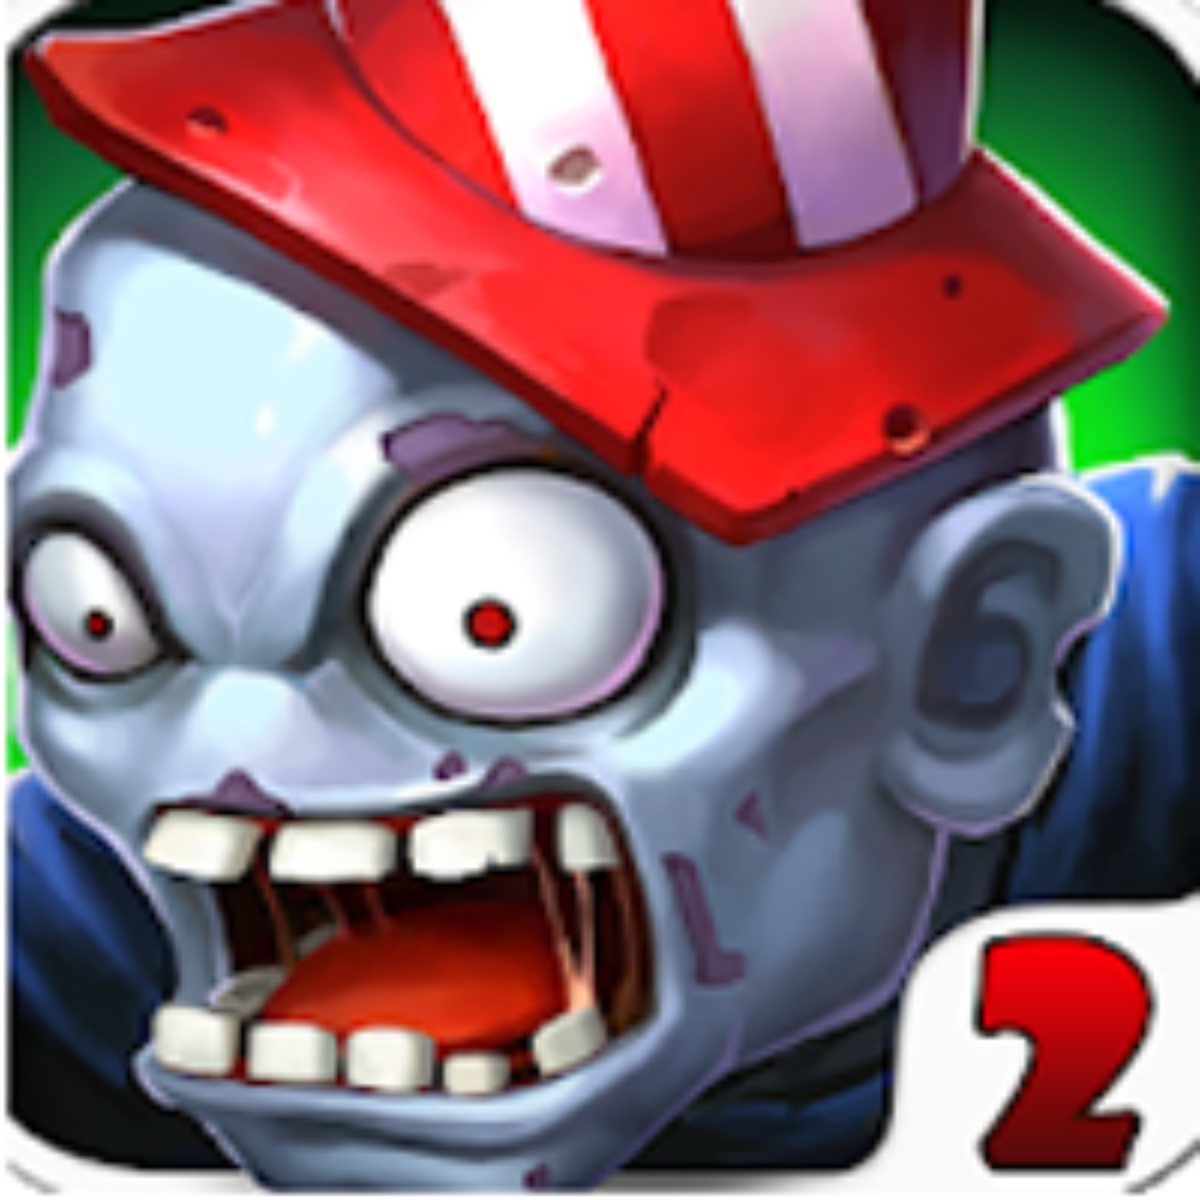 Zombie Catchers v1.32.8 Apk Mod (Dinheiro Infinito) Download 2023